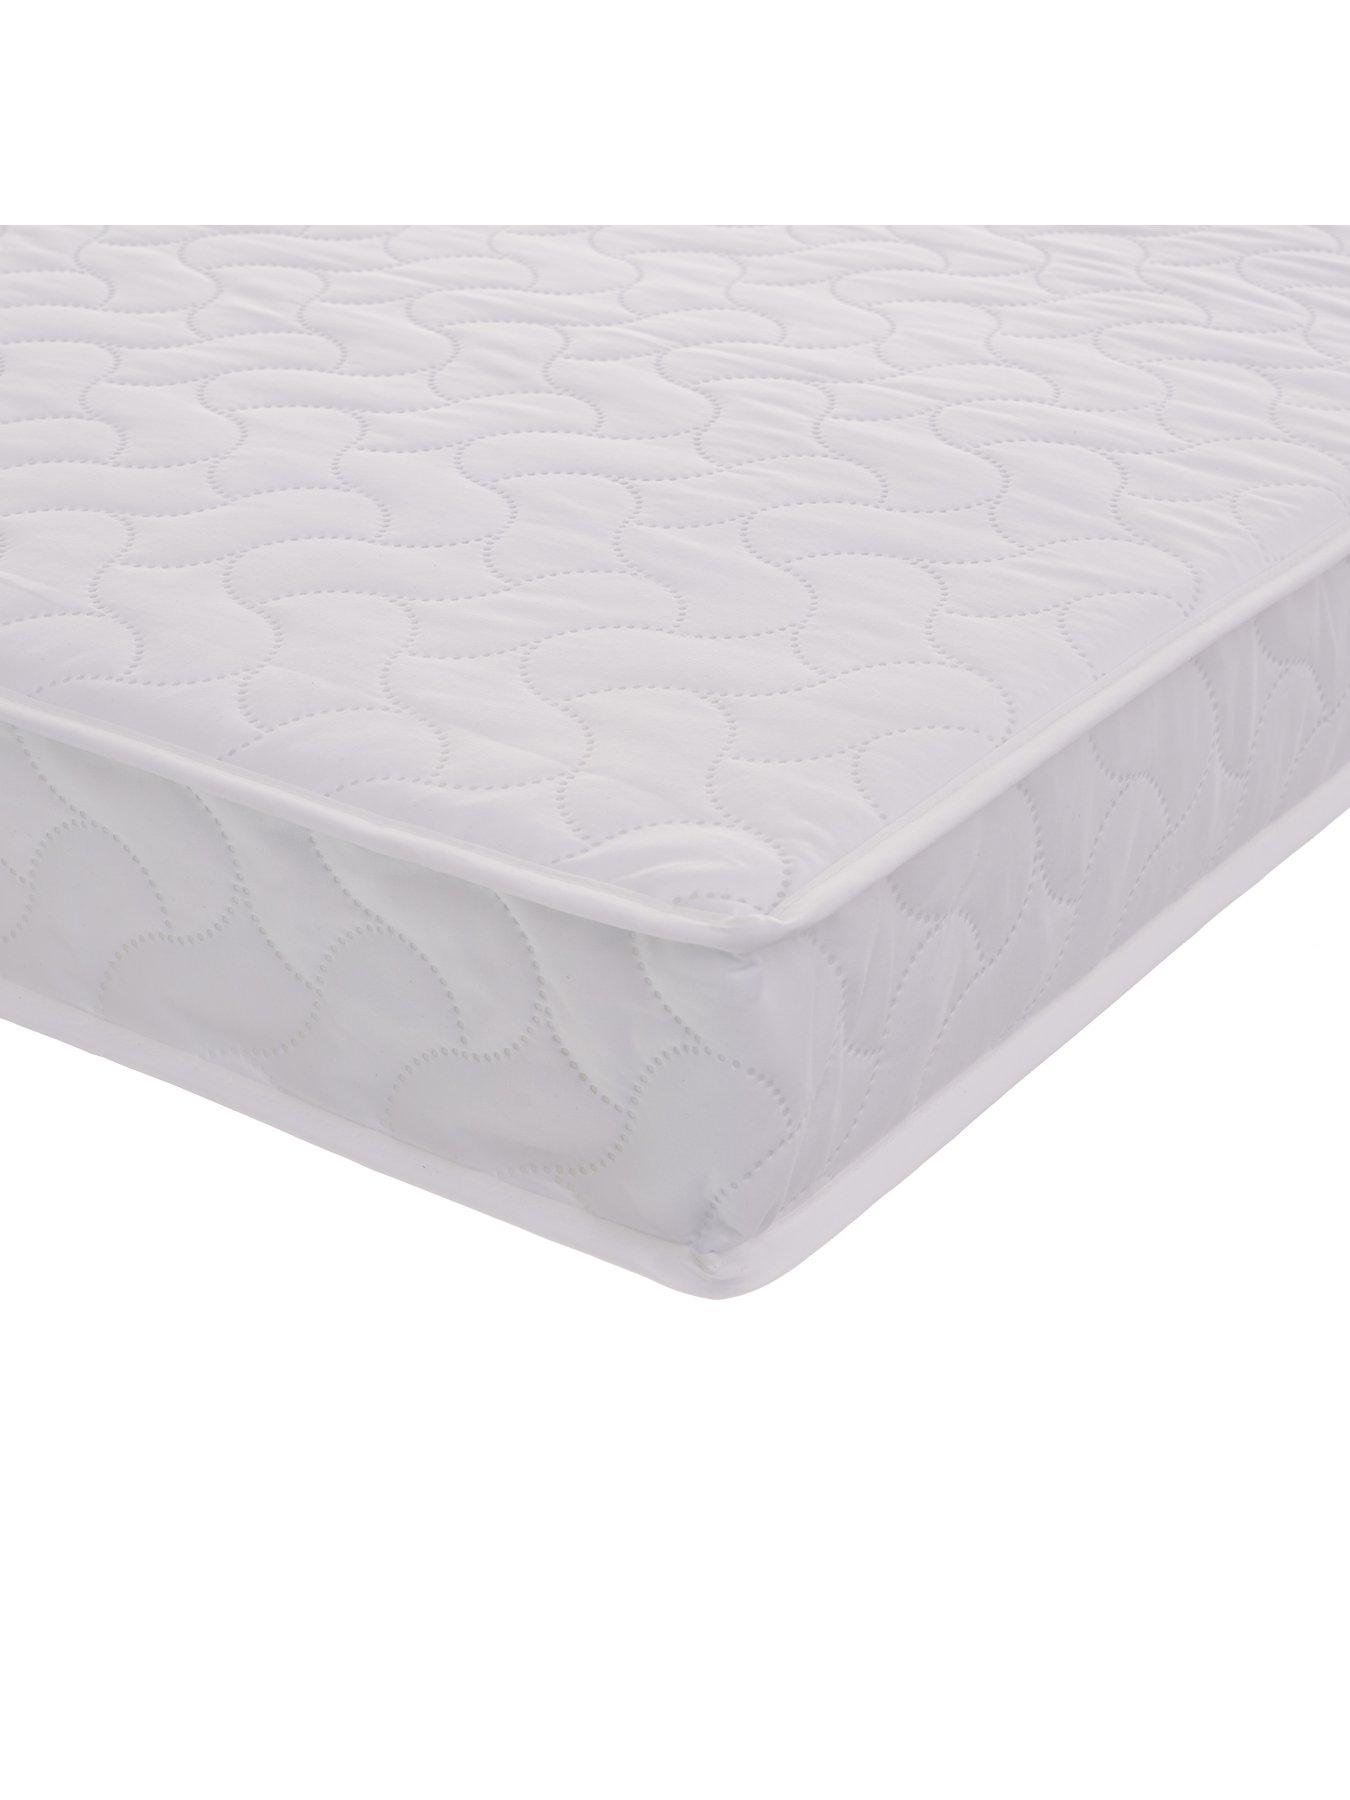 obaby pocket sprung cot bed mattress